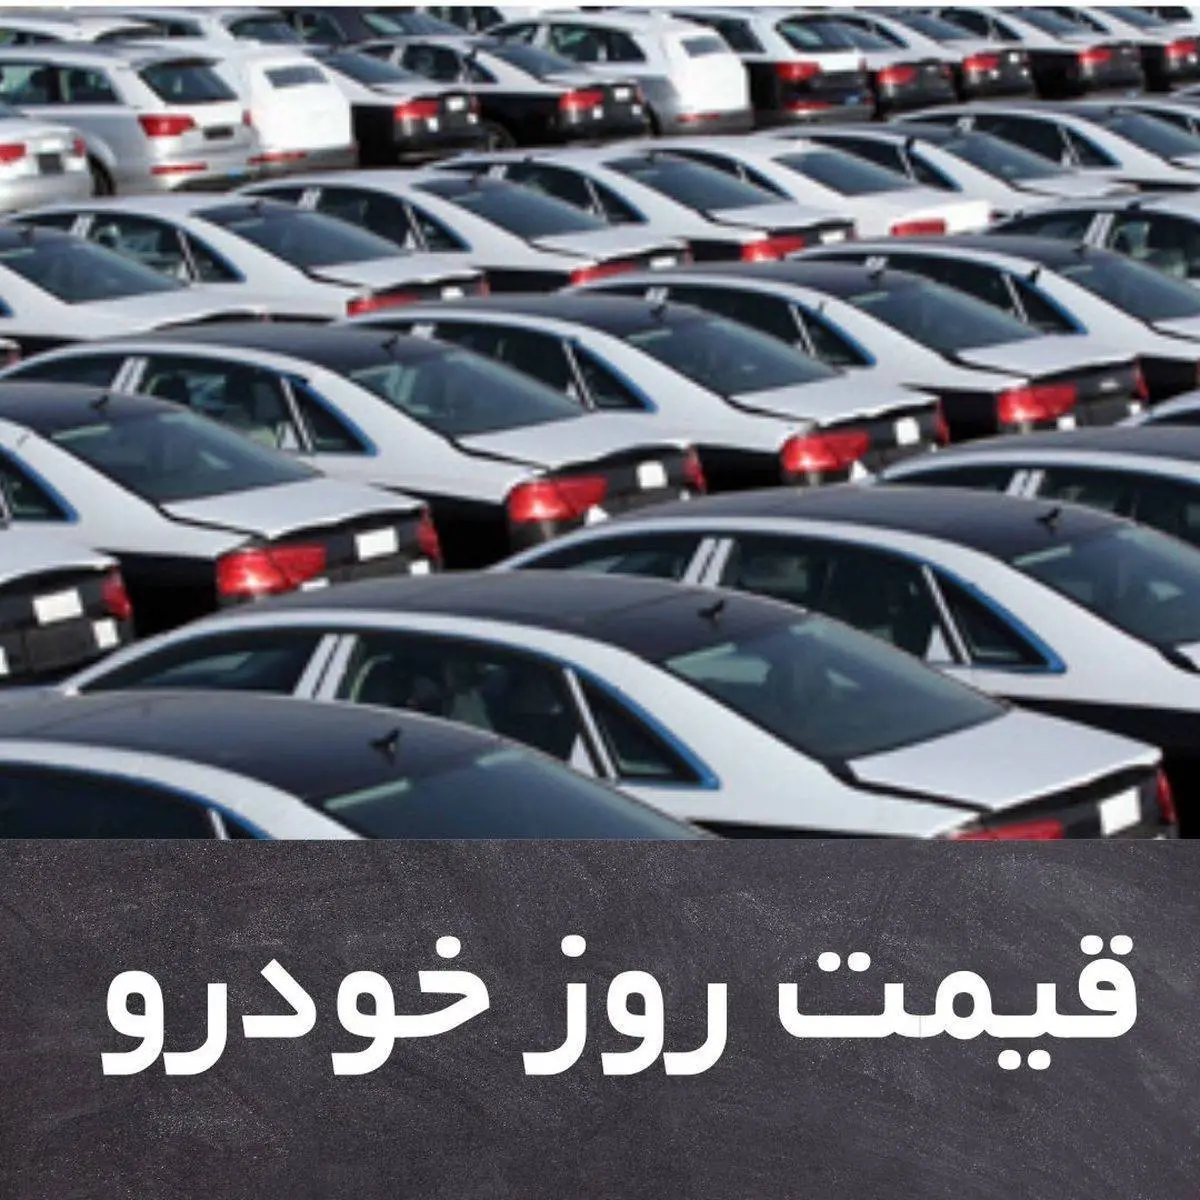 قیمت روز خودرو جمعه 17 اردیبهشت + جدول